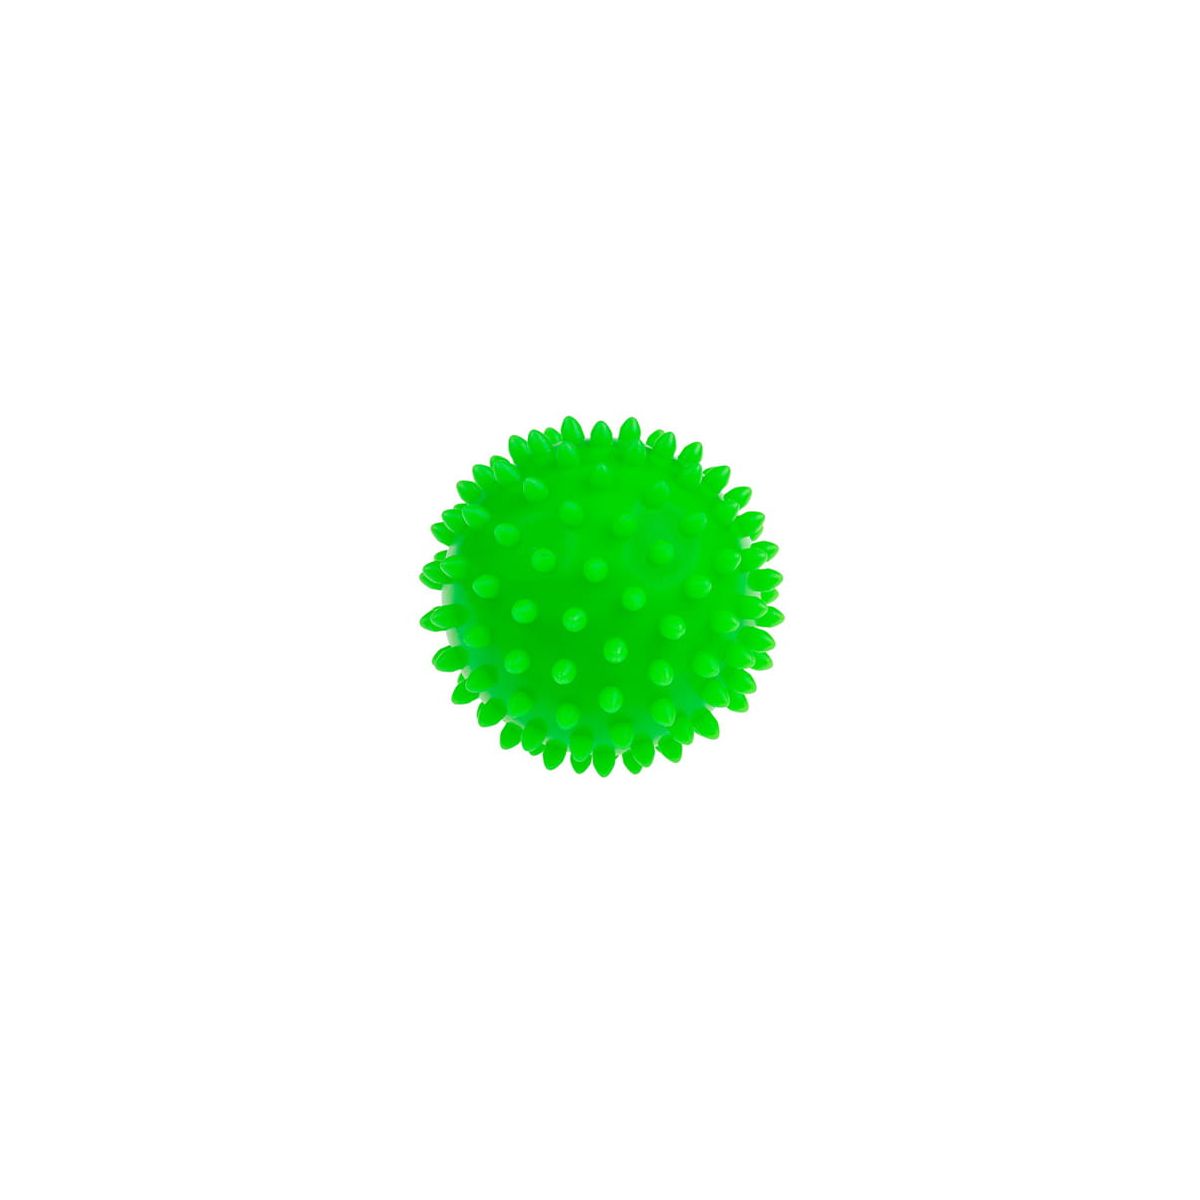 Piłka do masażu rehabilitacyjna 9cm zielona guma Tullo (440)